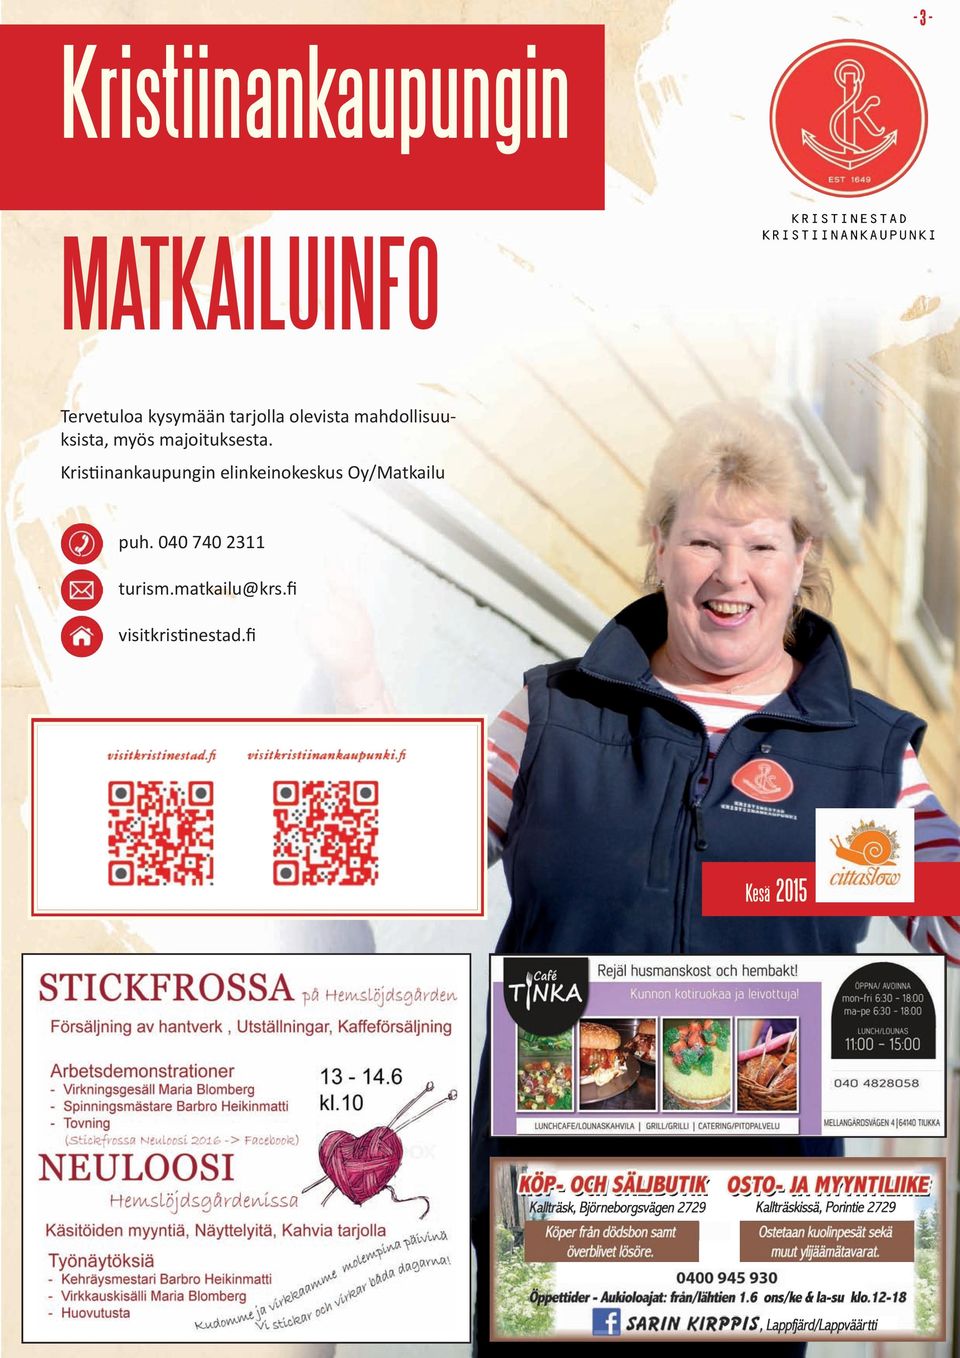 Kristiinankaupungin elinkeinokeskus Oy/Matkailu puh.